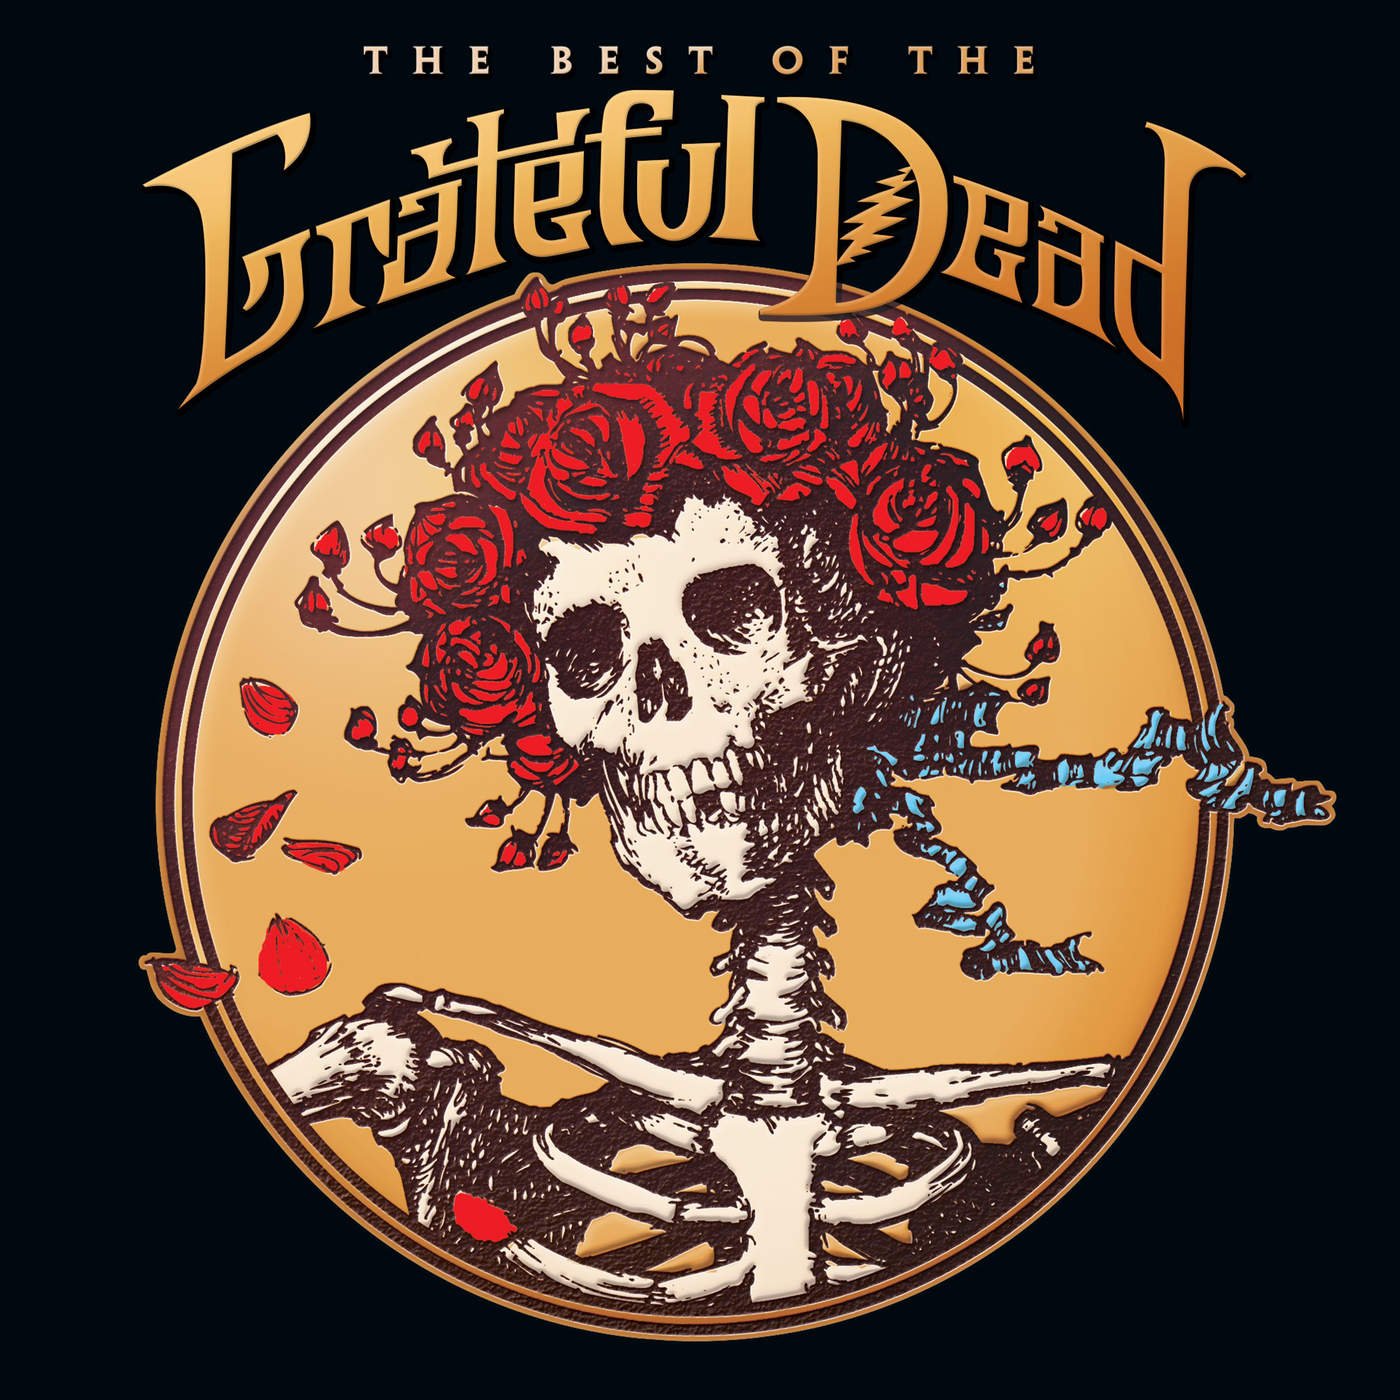 Grateful Dead-The Best Of The Grateful Dead-2CD-FLAC-2015-BOCKSCAR Download